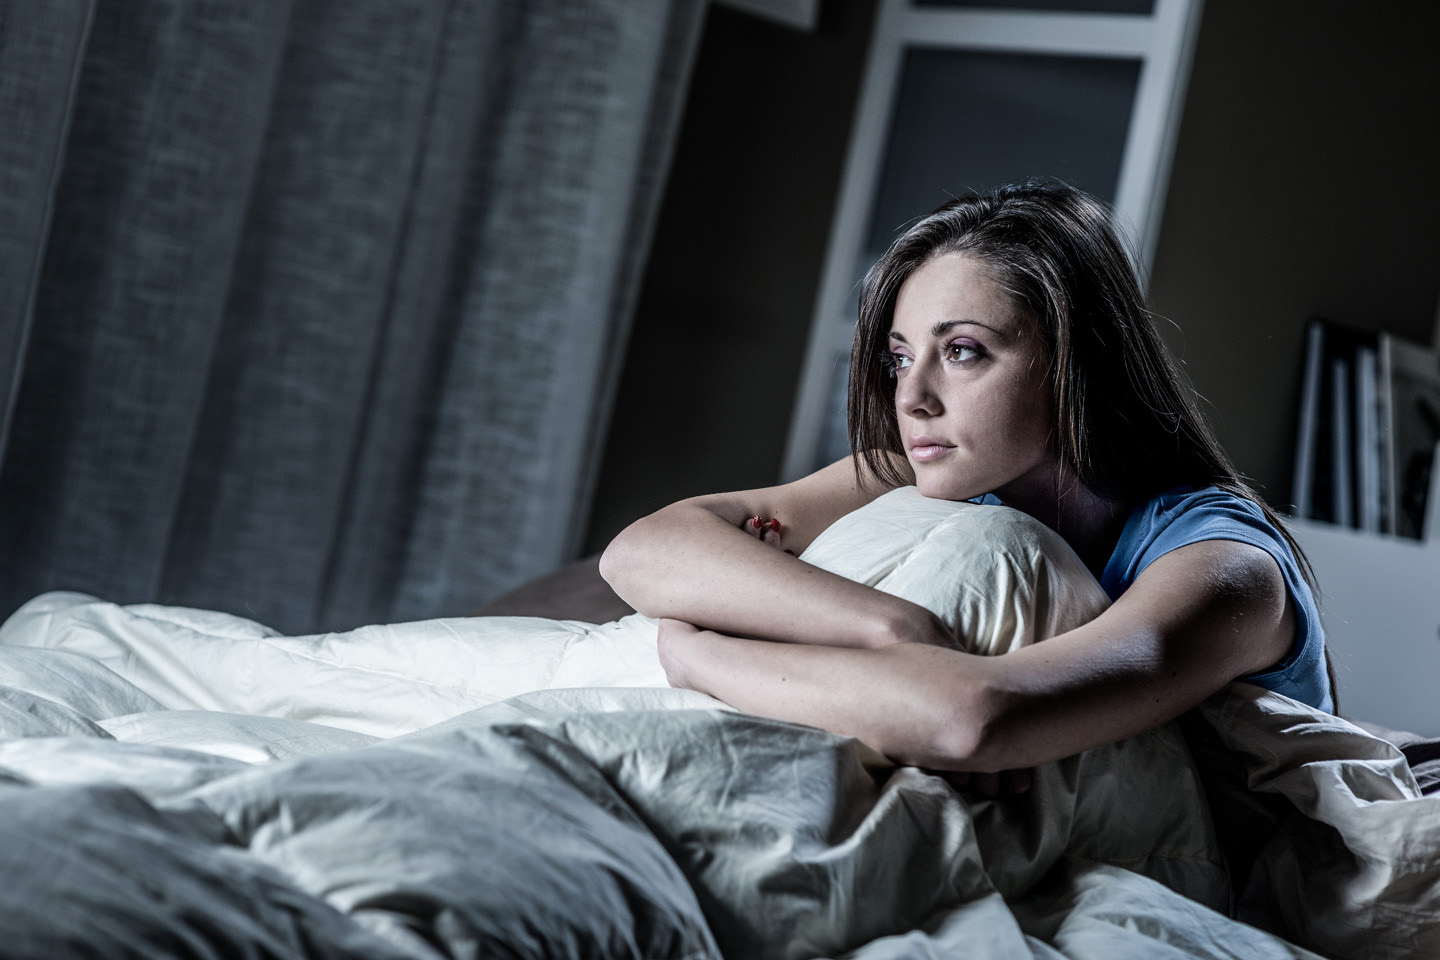 Плохой сон актуальная проблема практически для каждого - как исправить ситуацию? Hronicheskaja-bessonnica